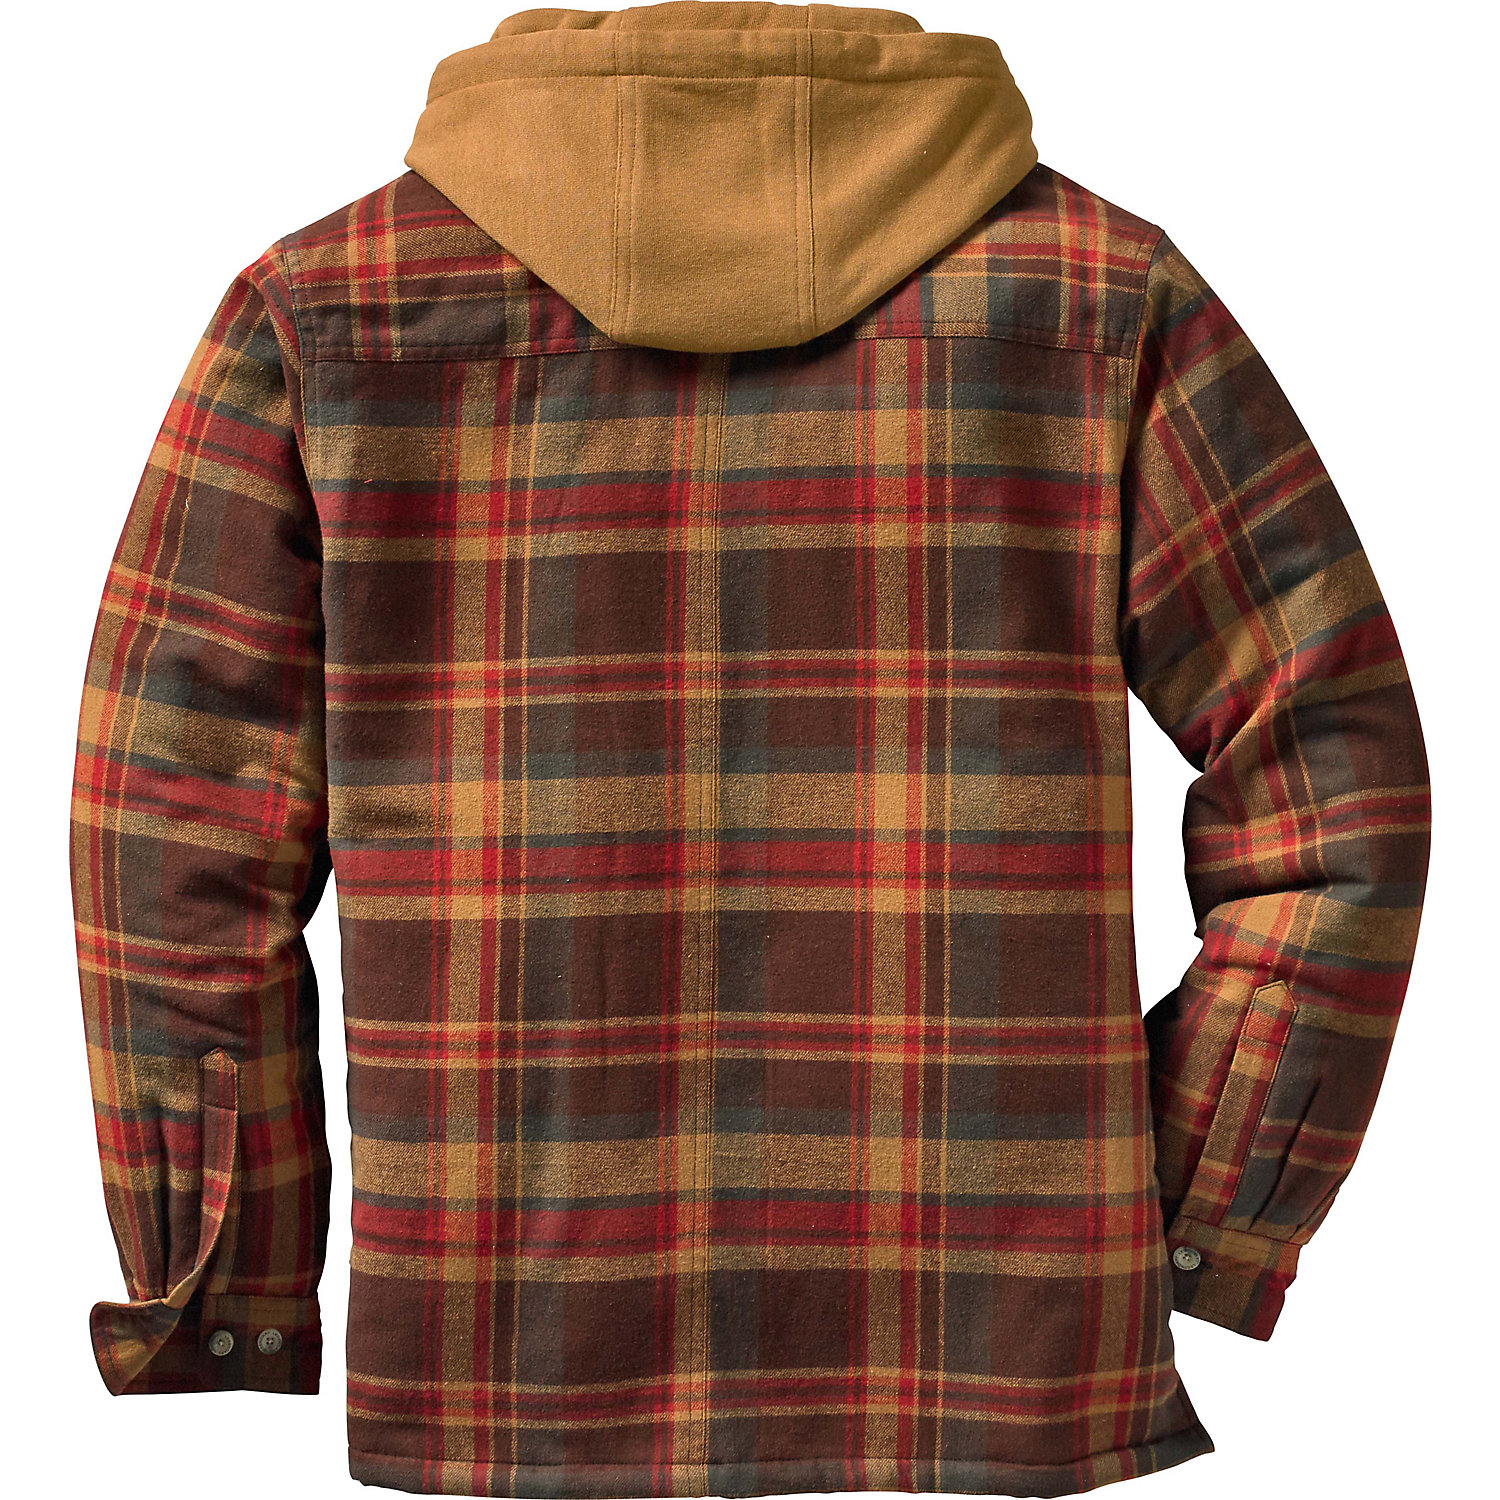 Legendary Whitetails Men's Maplewood Hooded Shirt Jacket | eBay